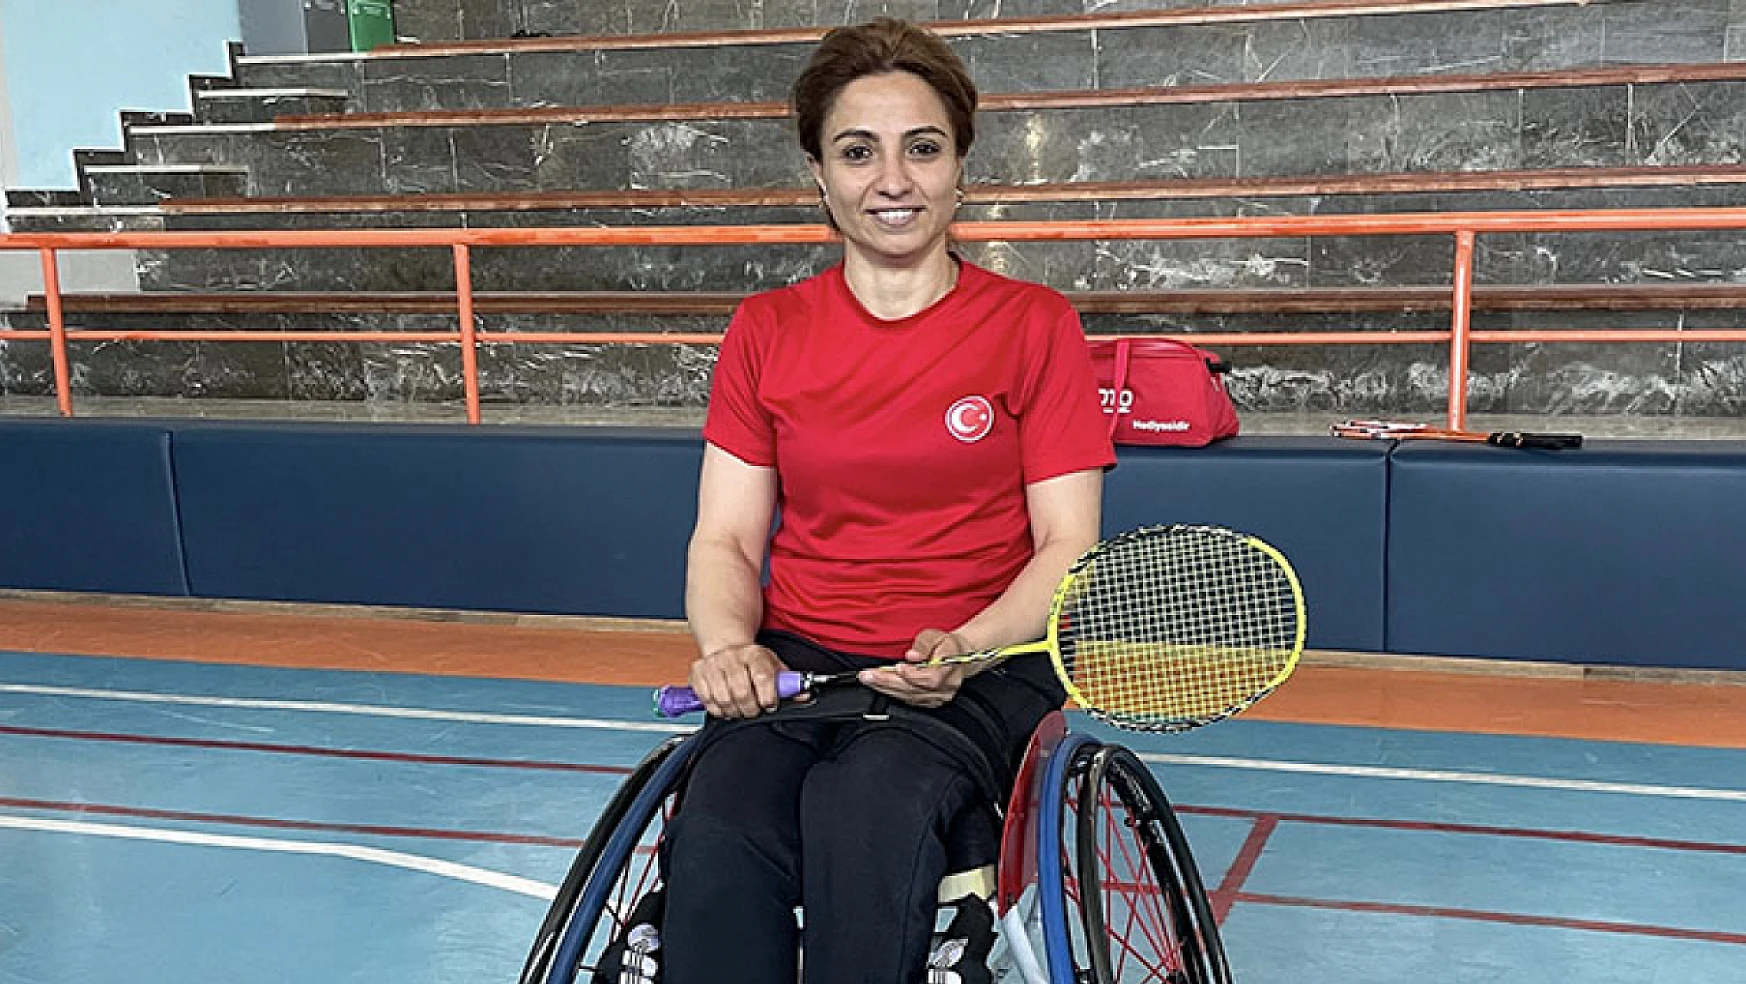 Milli para badmintoncu Emine Seçkin, madalya başarısını Paris 2024'te sürdürmek istiyor!